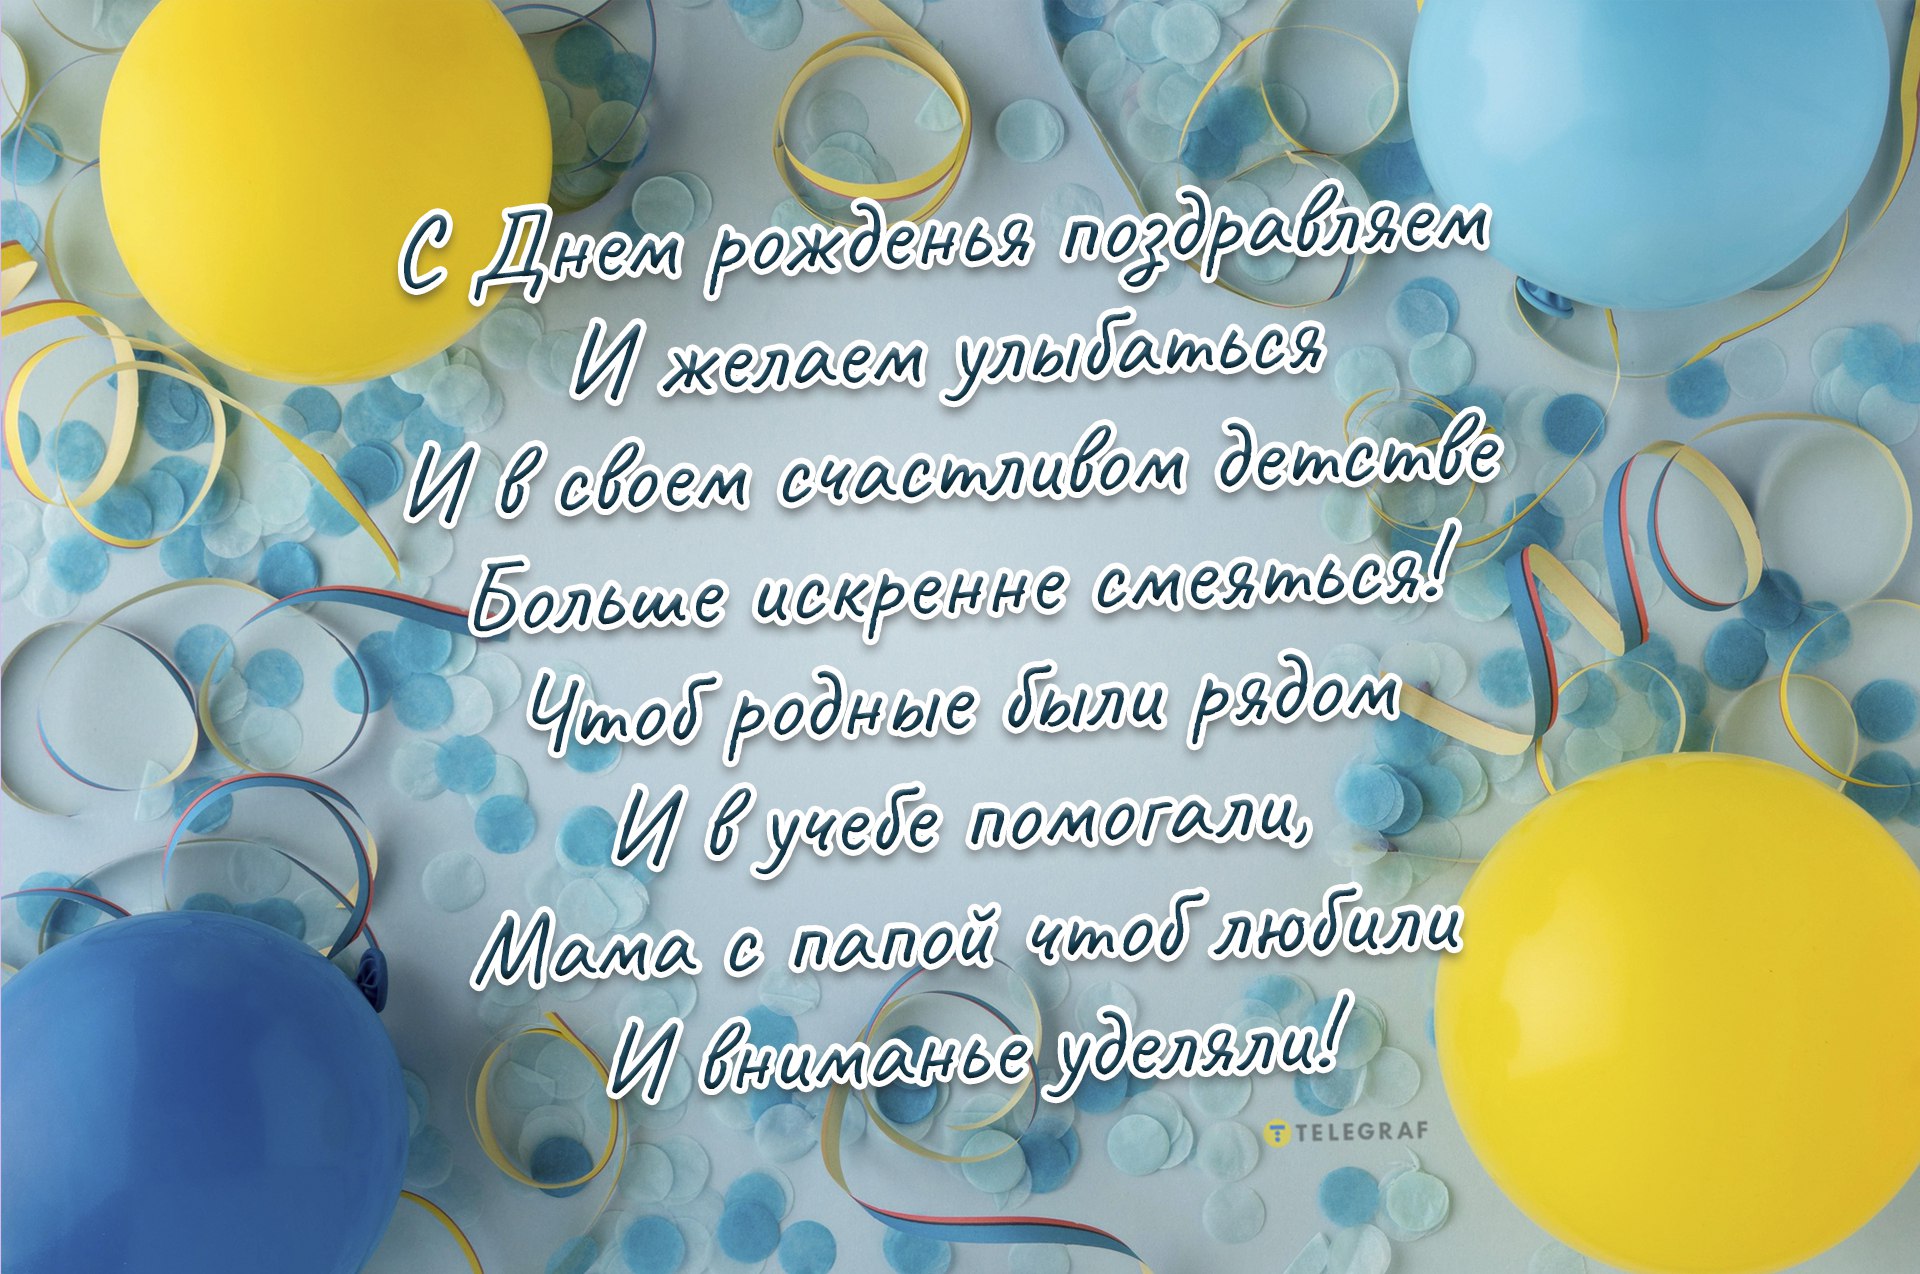 Поздравительные открытки с днем рождения детские - фото и картинки luchistii-sudak.ru